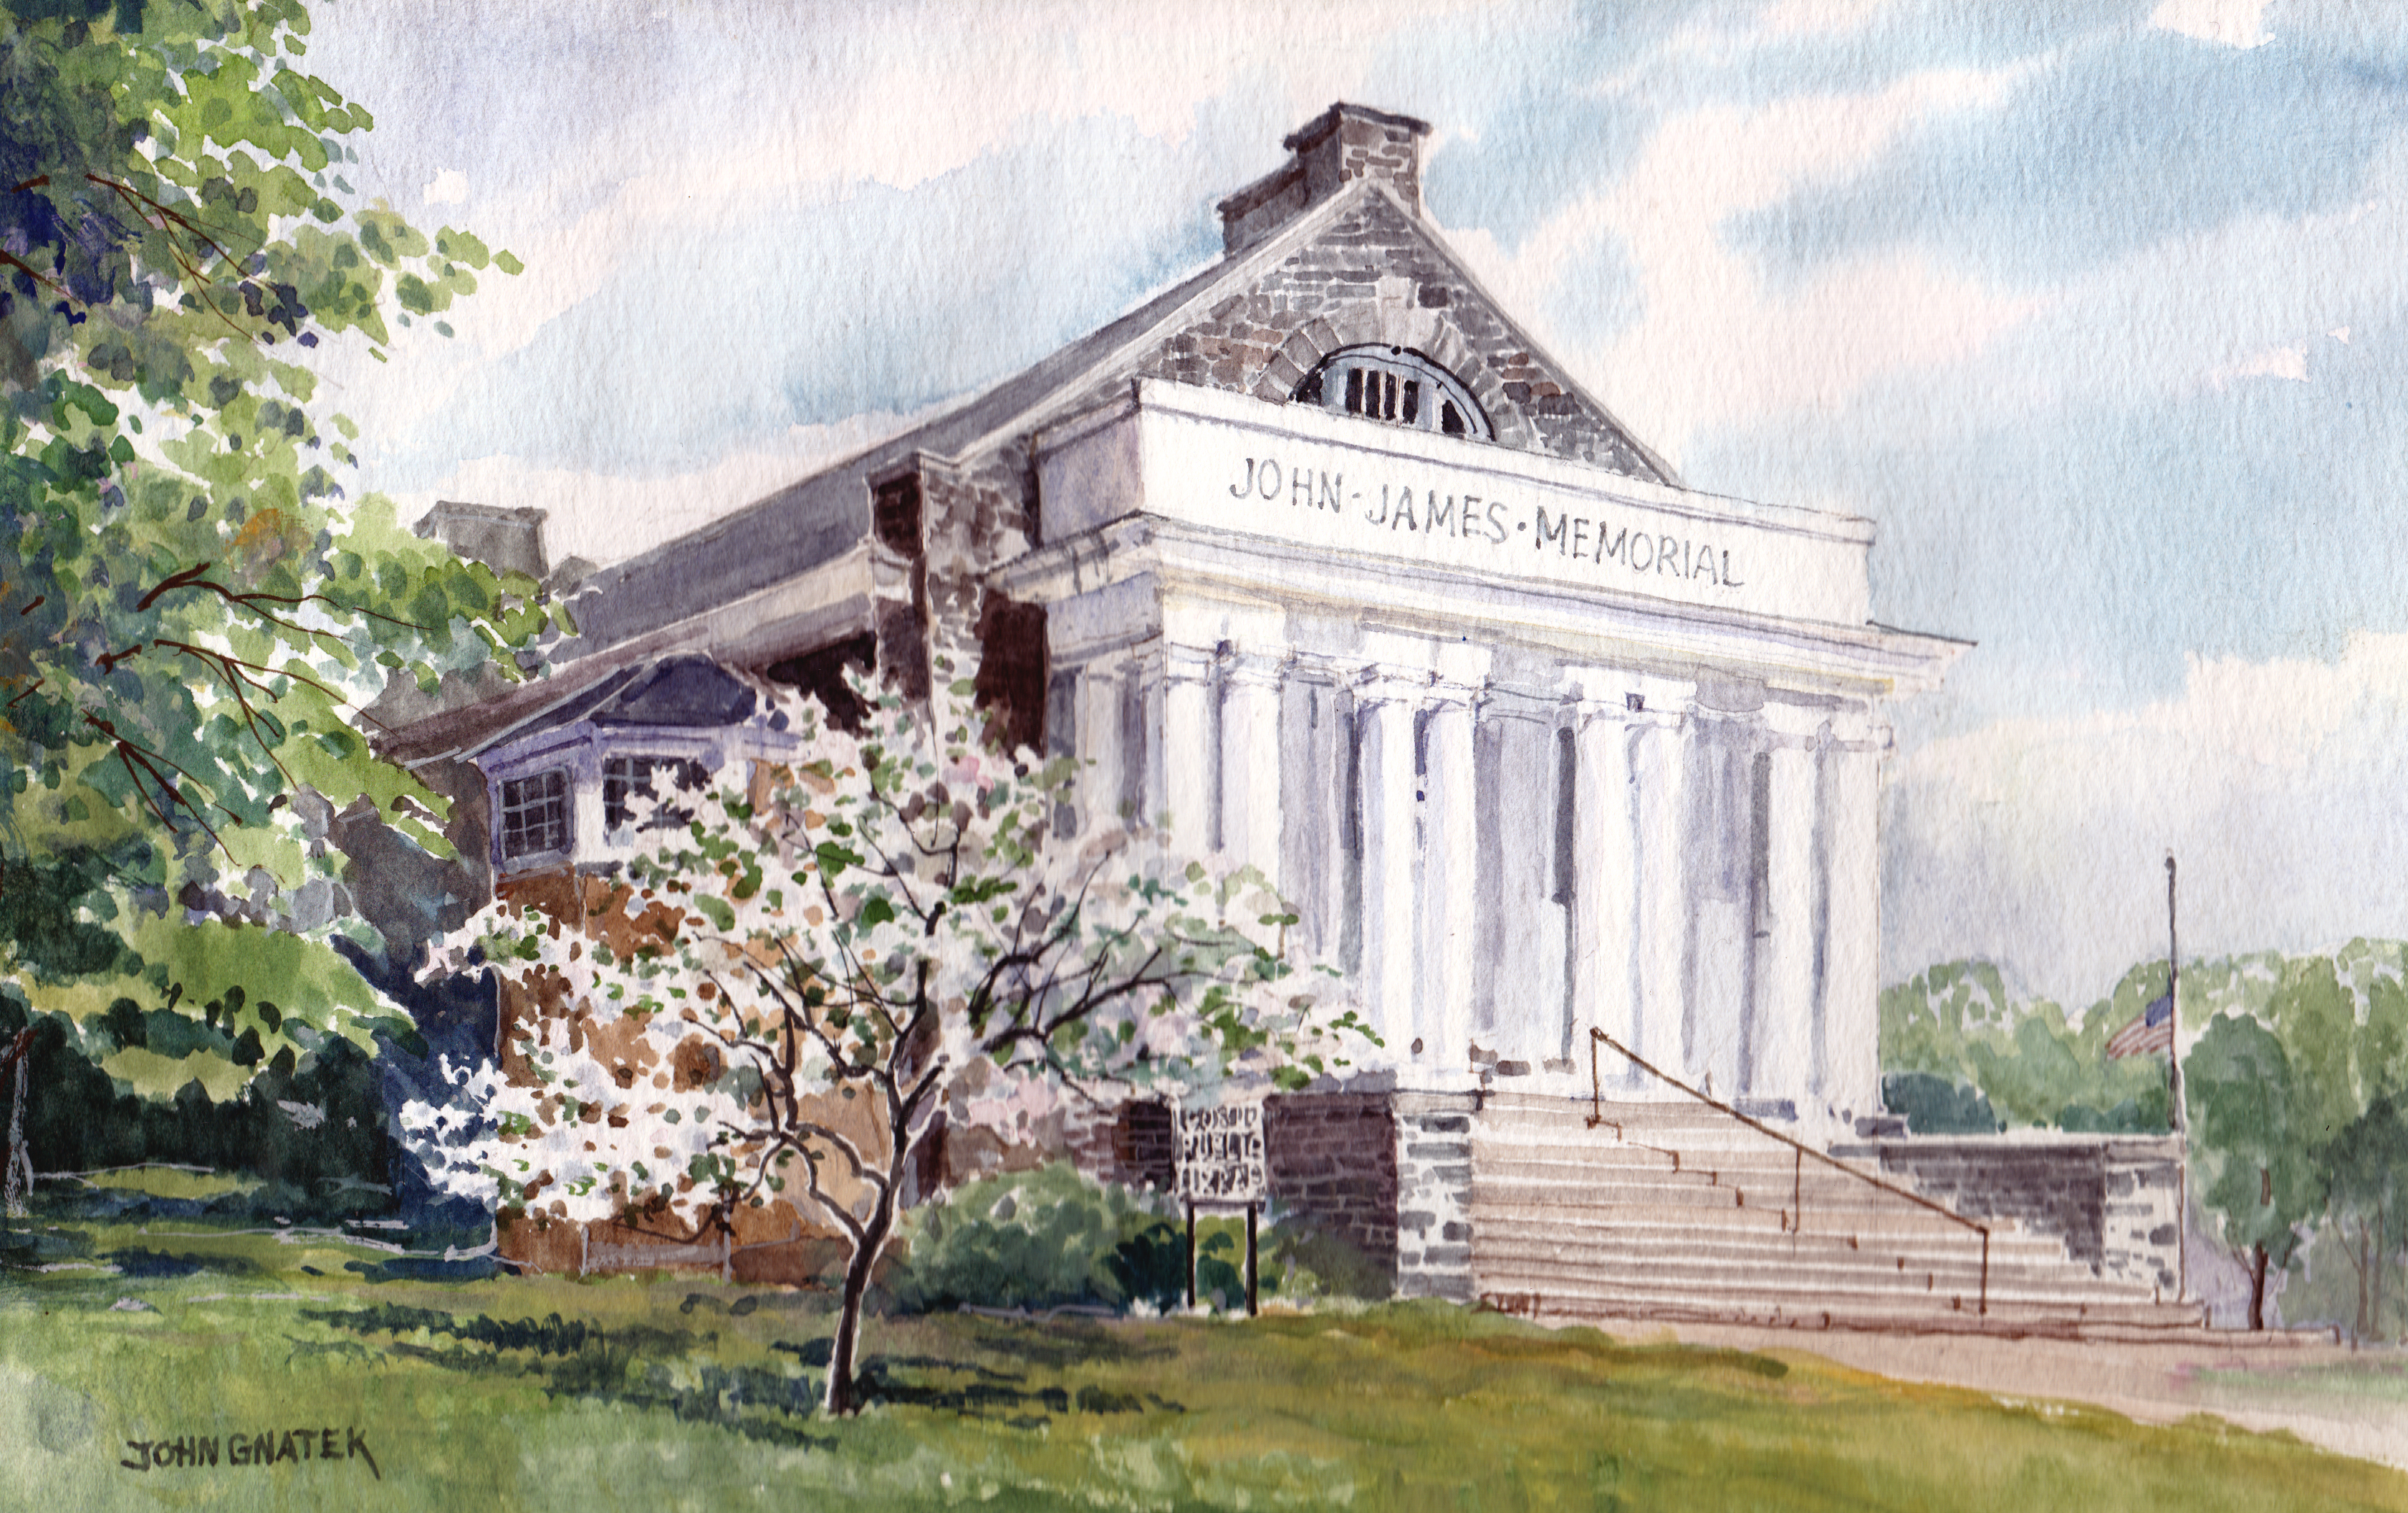 John James Memorial